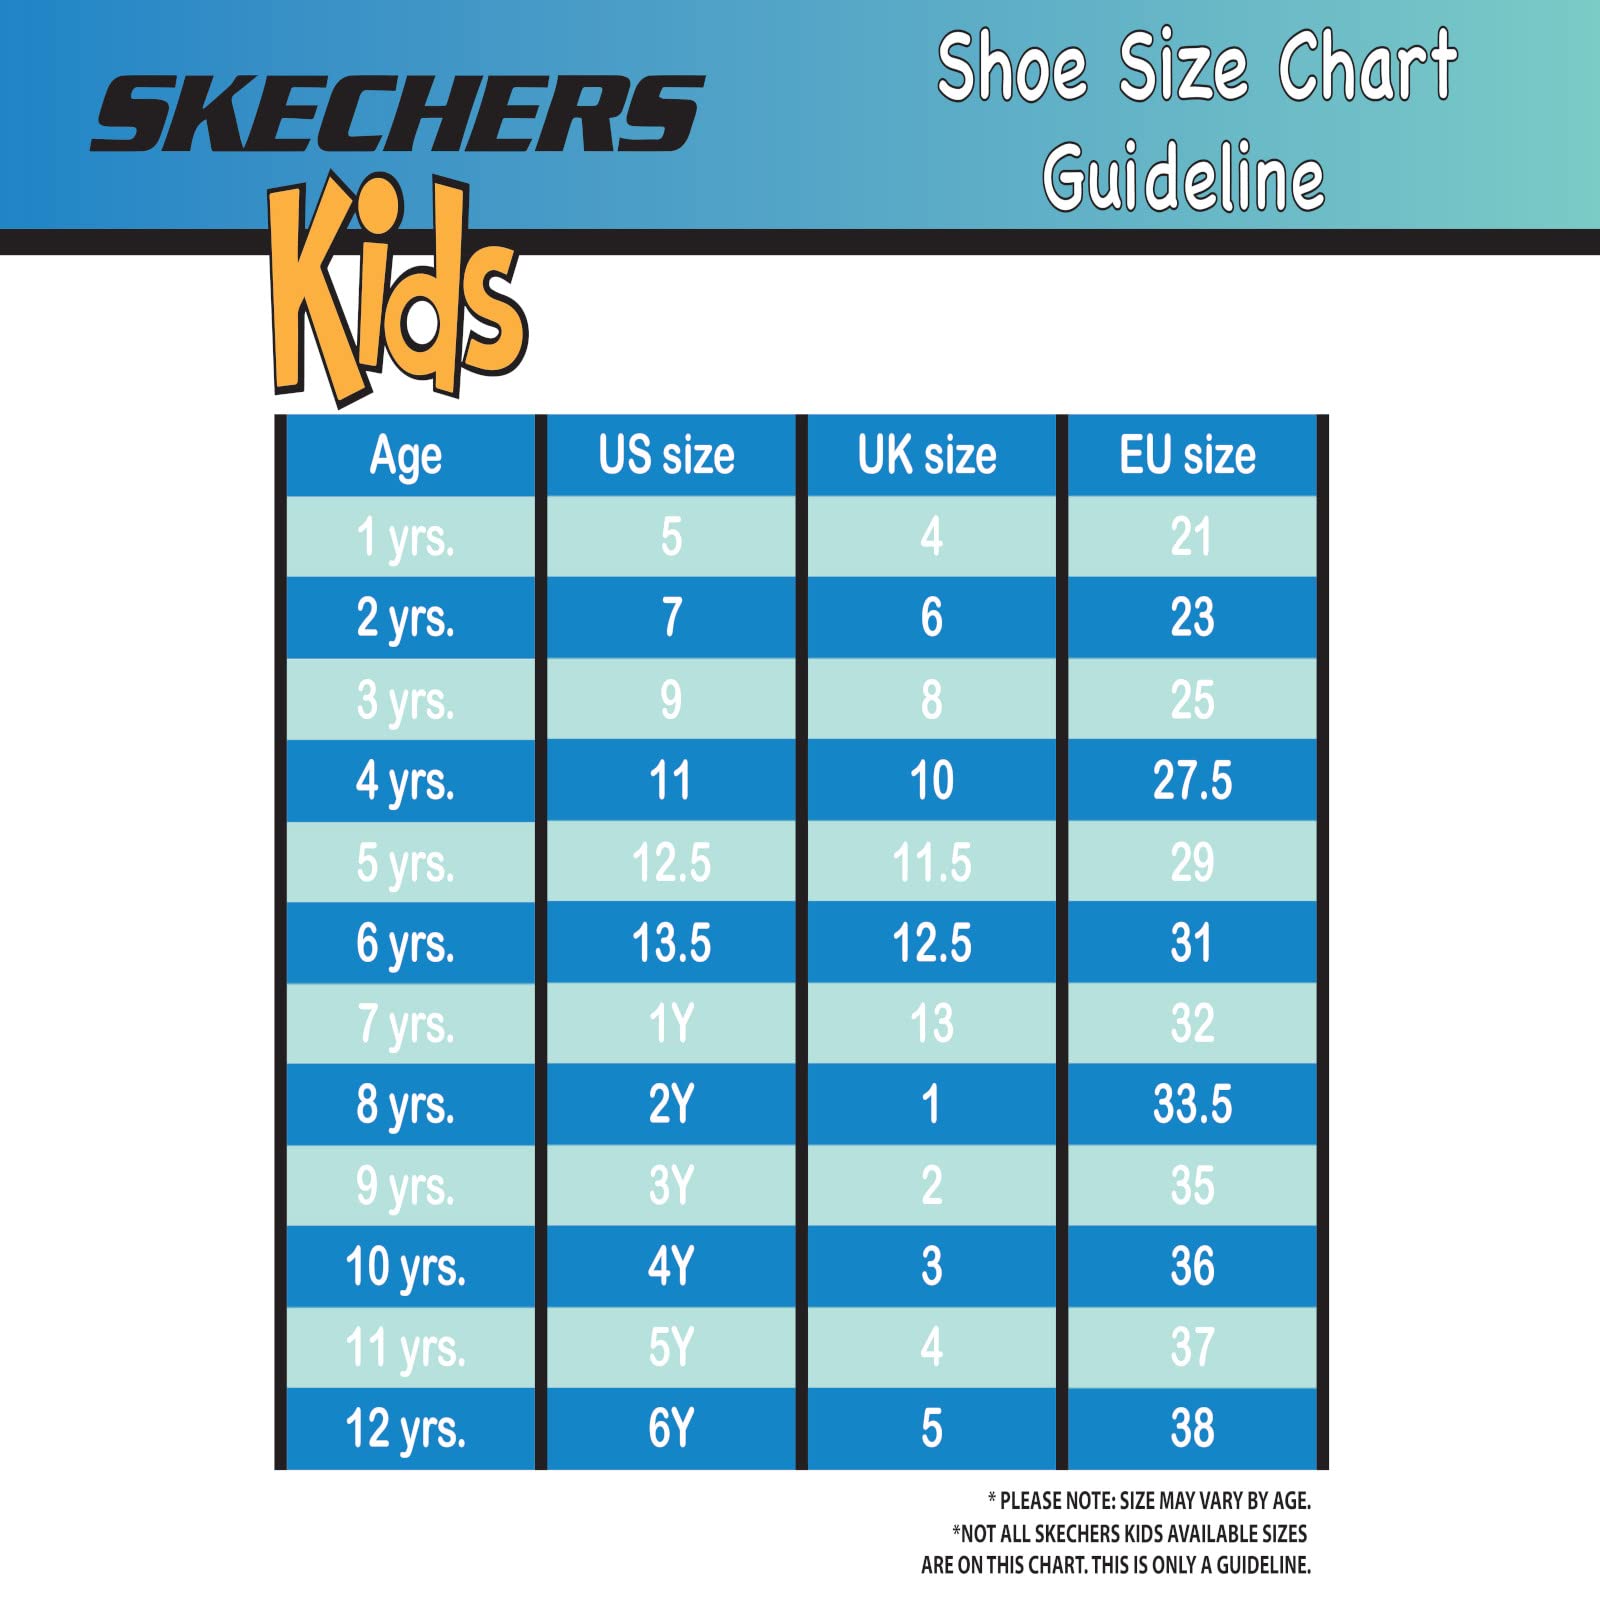 Skechers Unisex-Child Ultra Flex 3.0 Sneaker